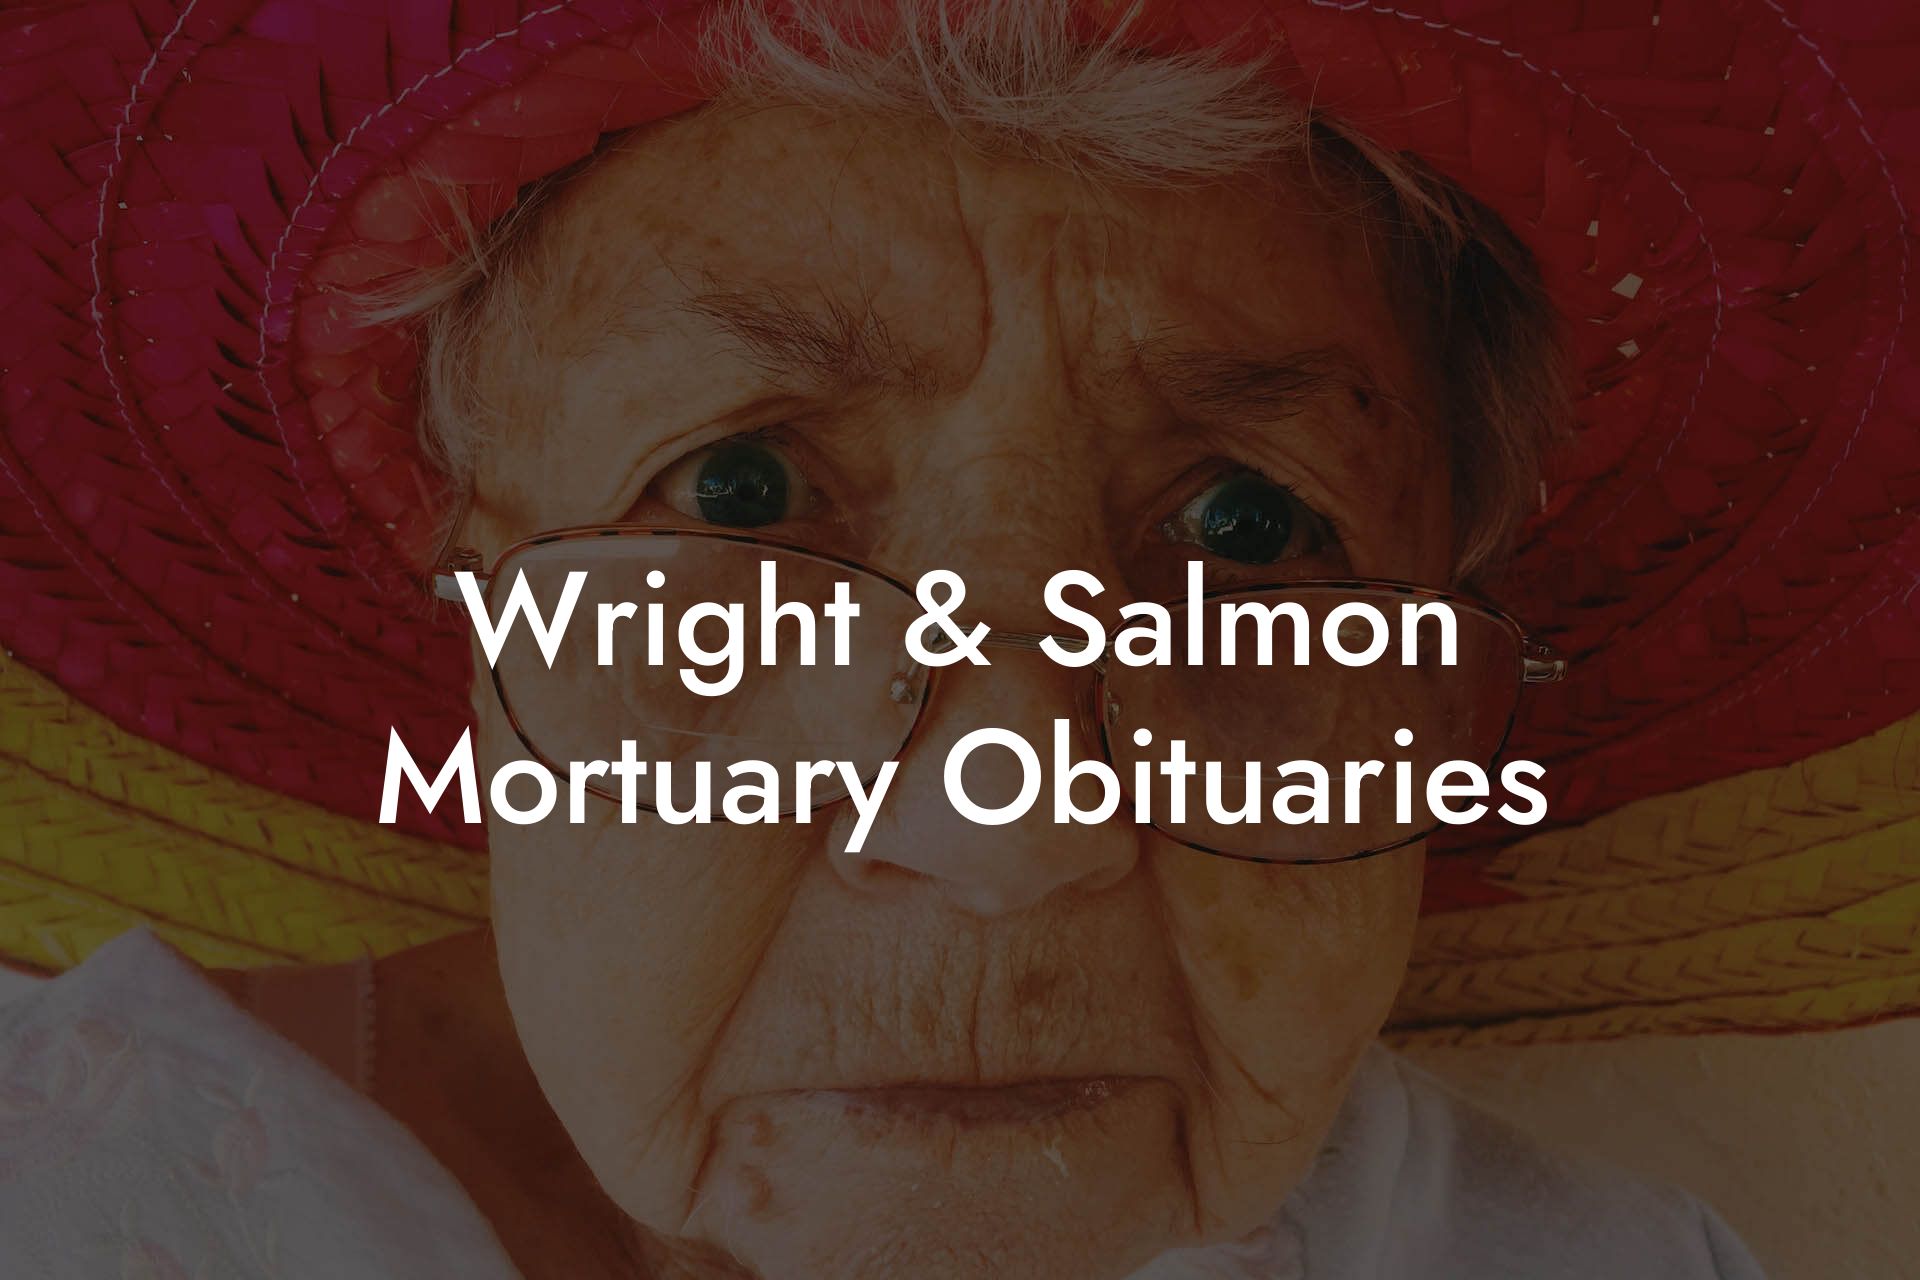 Wright & Salmon Mortuary Obituaries